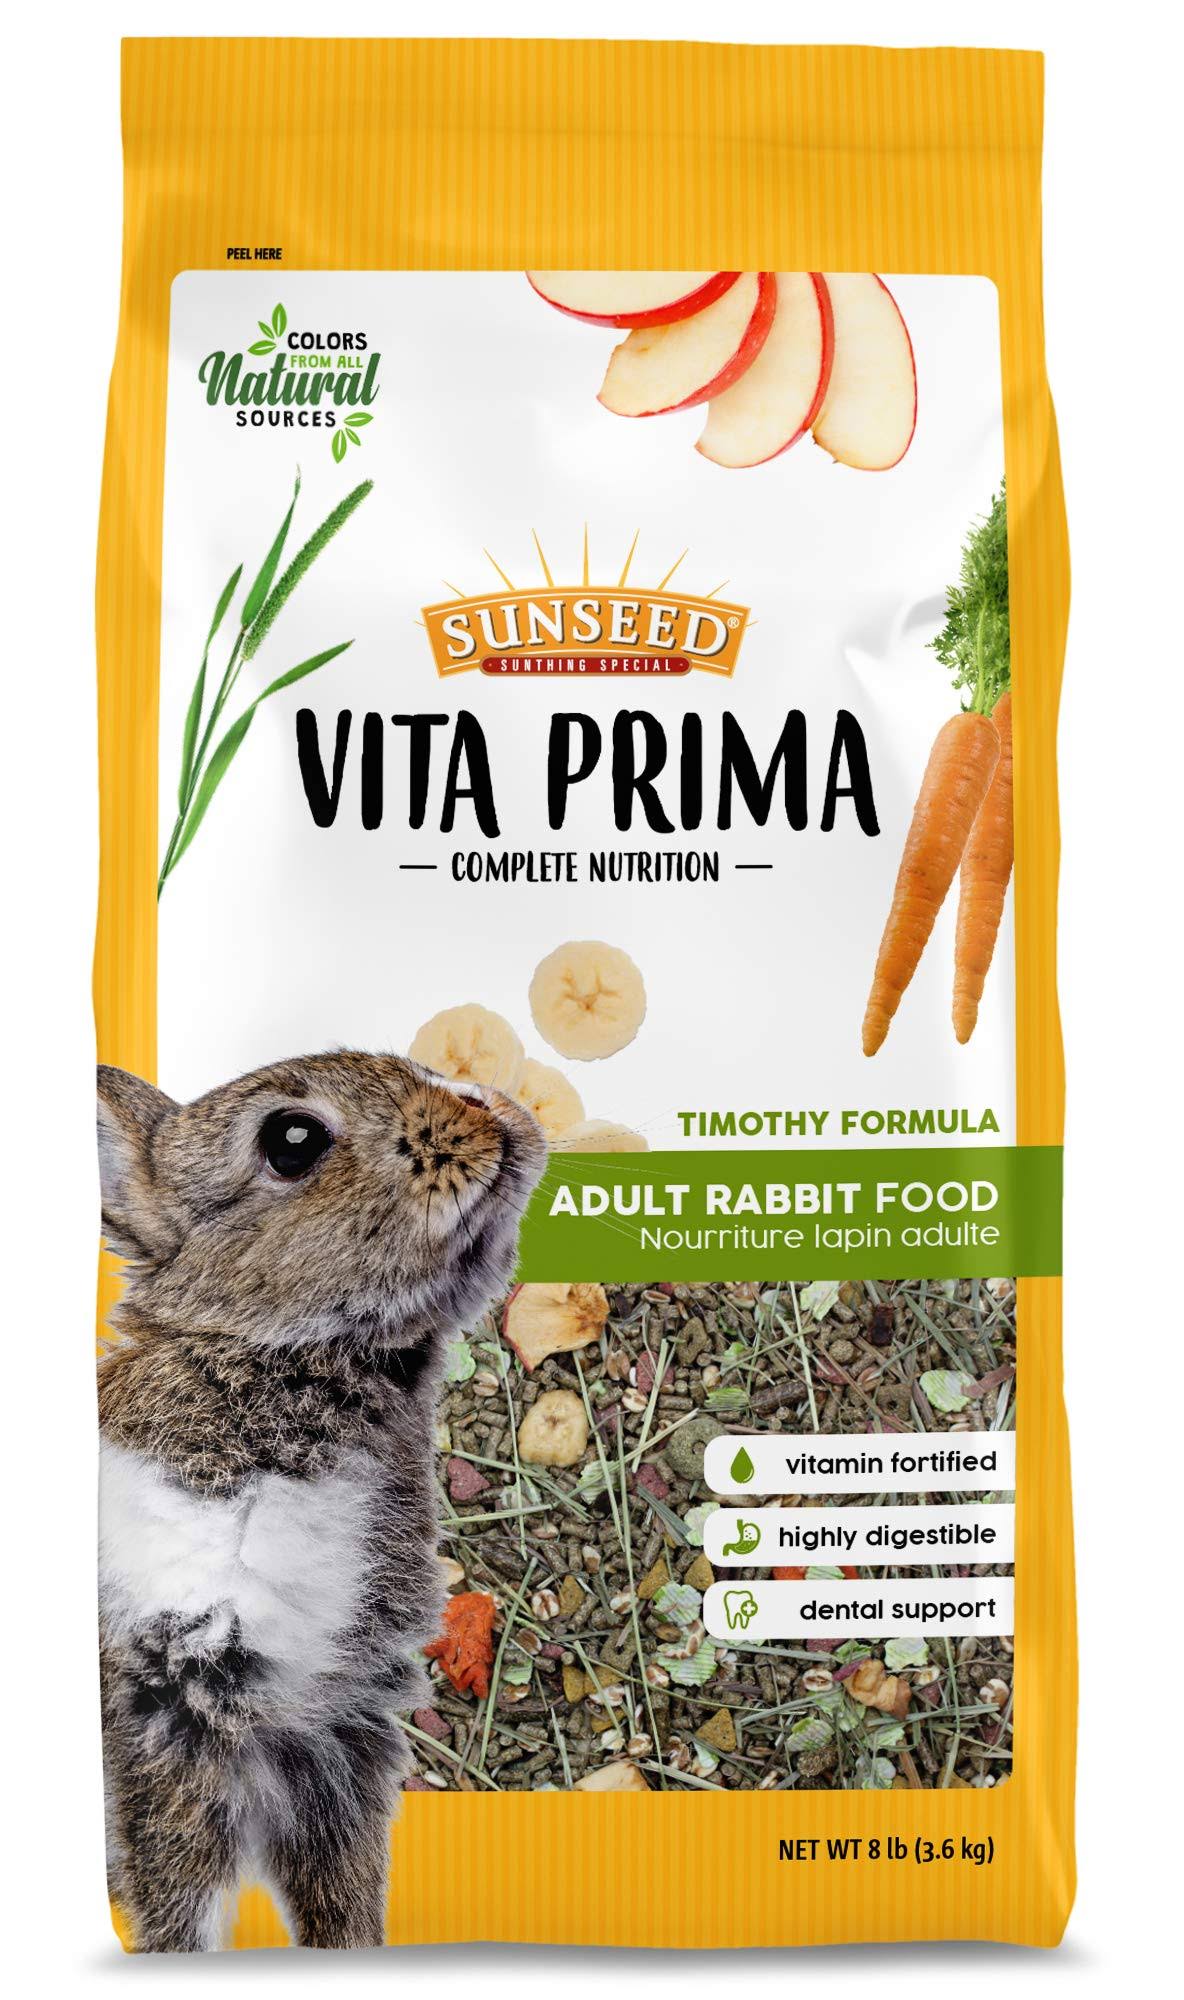 Sunseed Vita Prima Adult Rabbit Food, 8lb